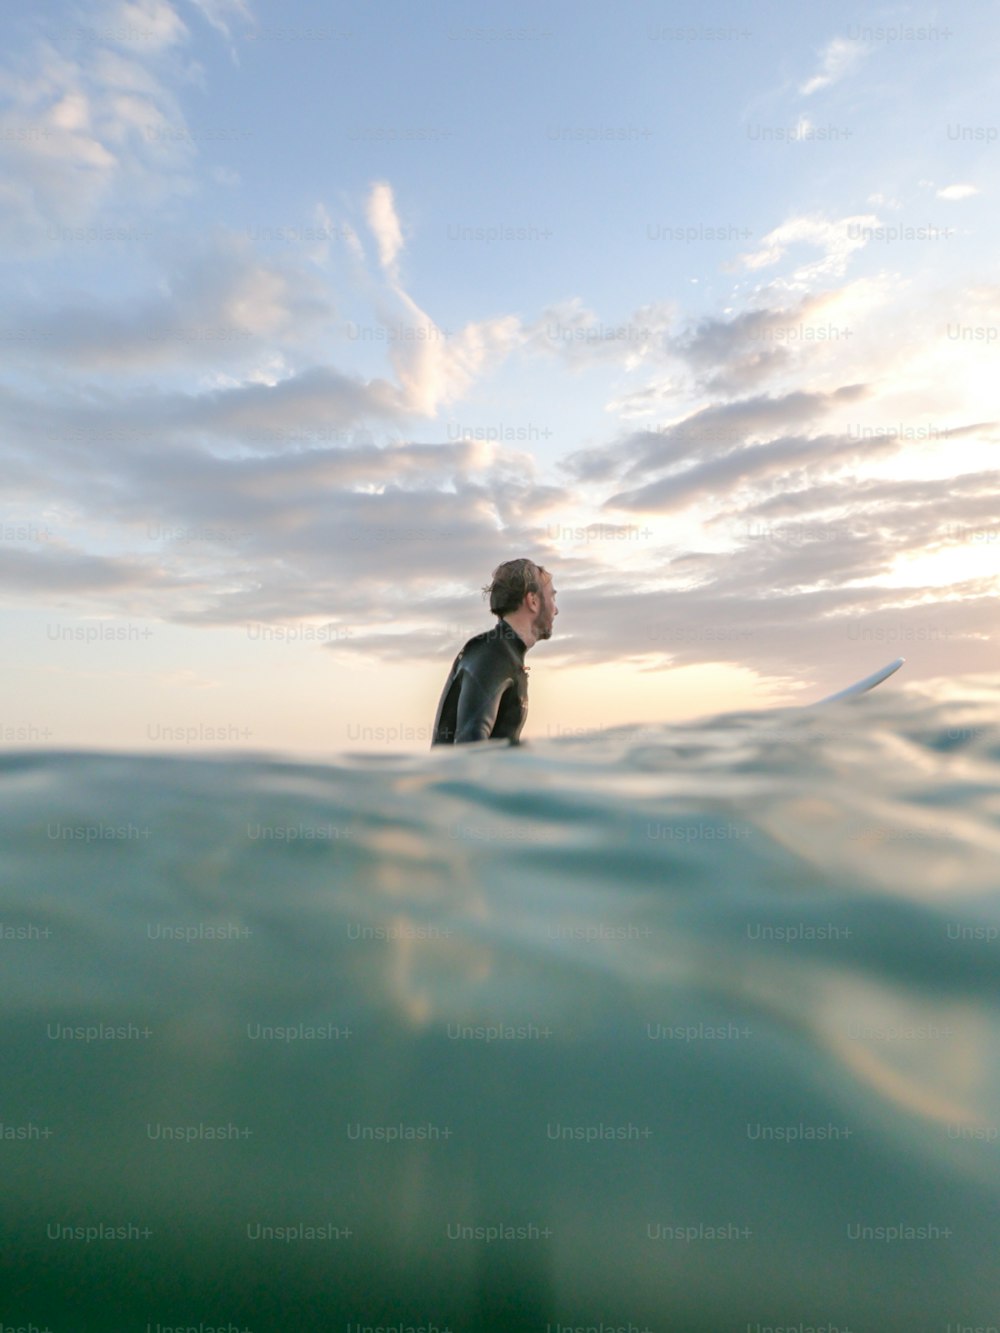 잠수복을 입은 남자가 바다에서 서핑 보드에 서 있다